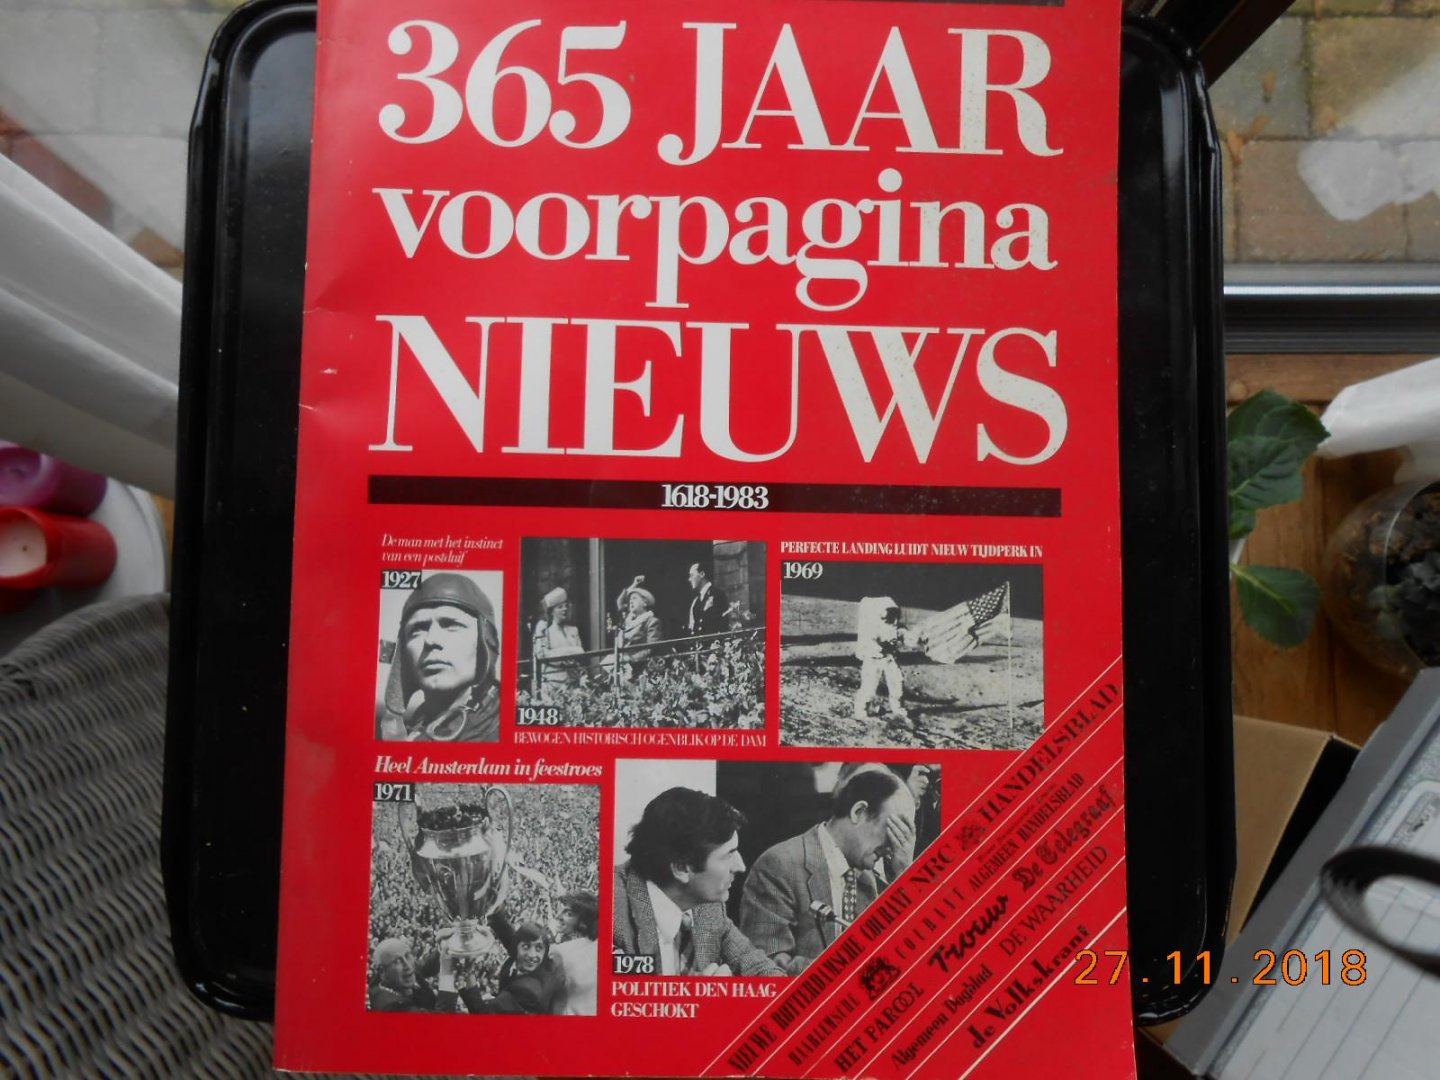  - 365 jaar voorpagina nieuws  1618-1983